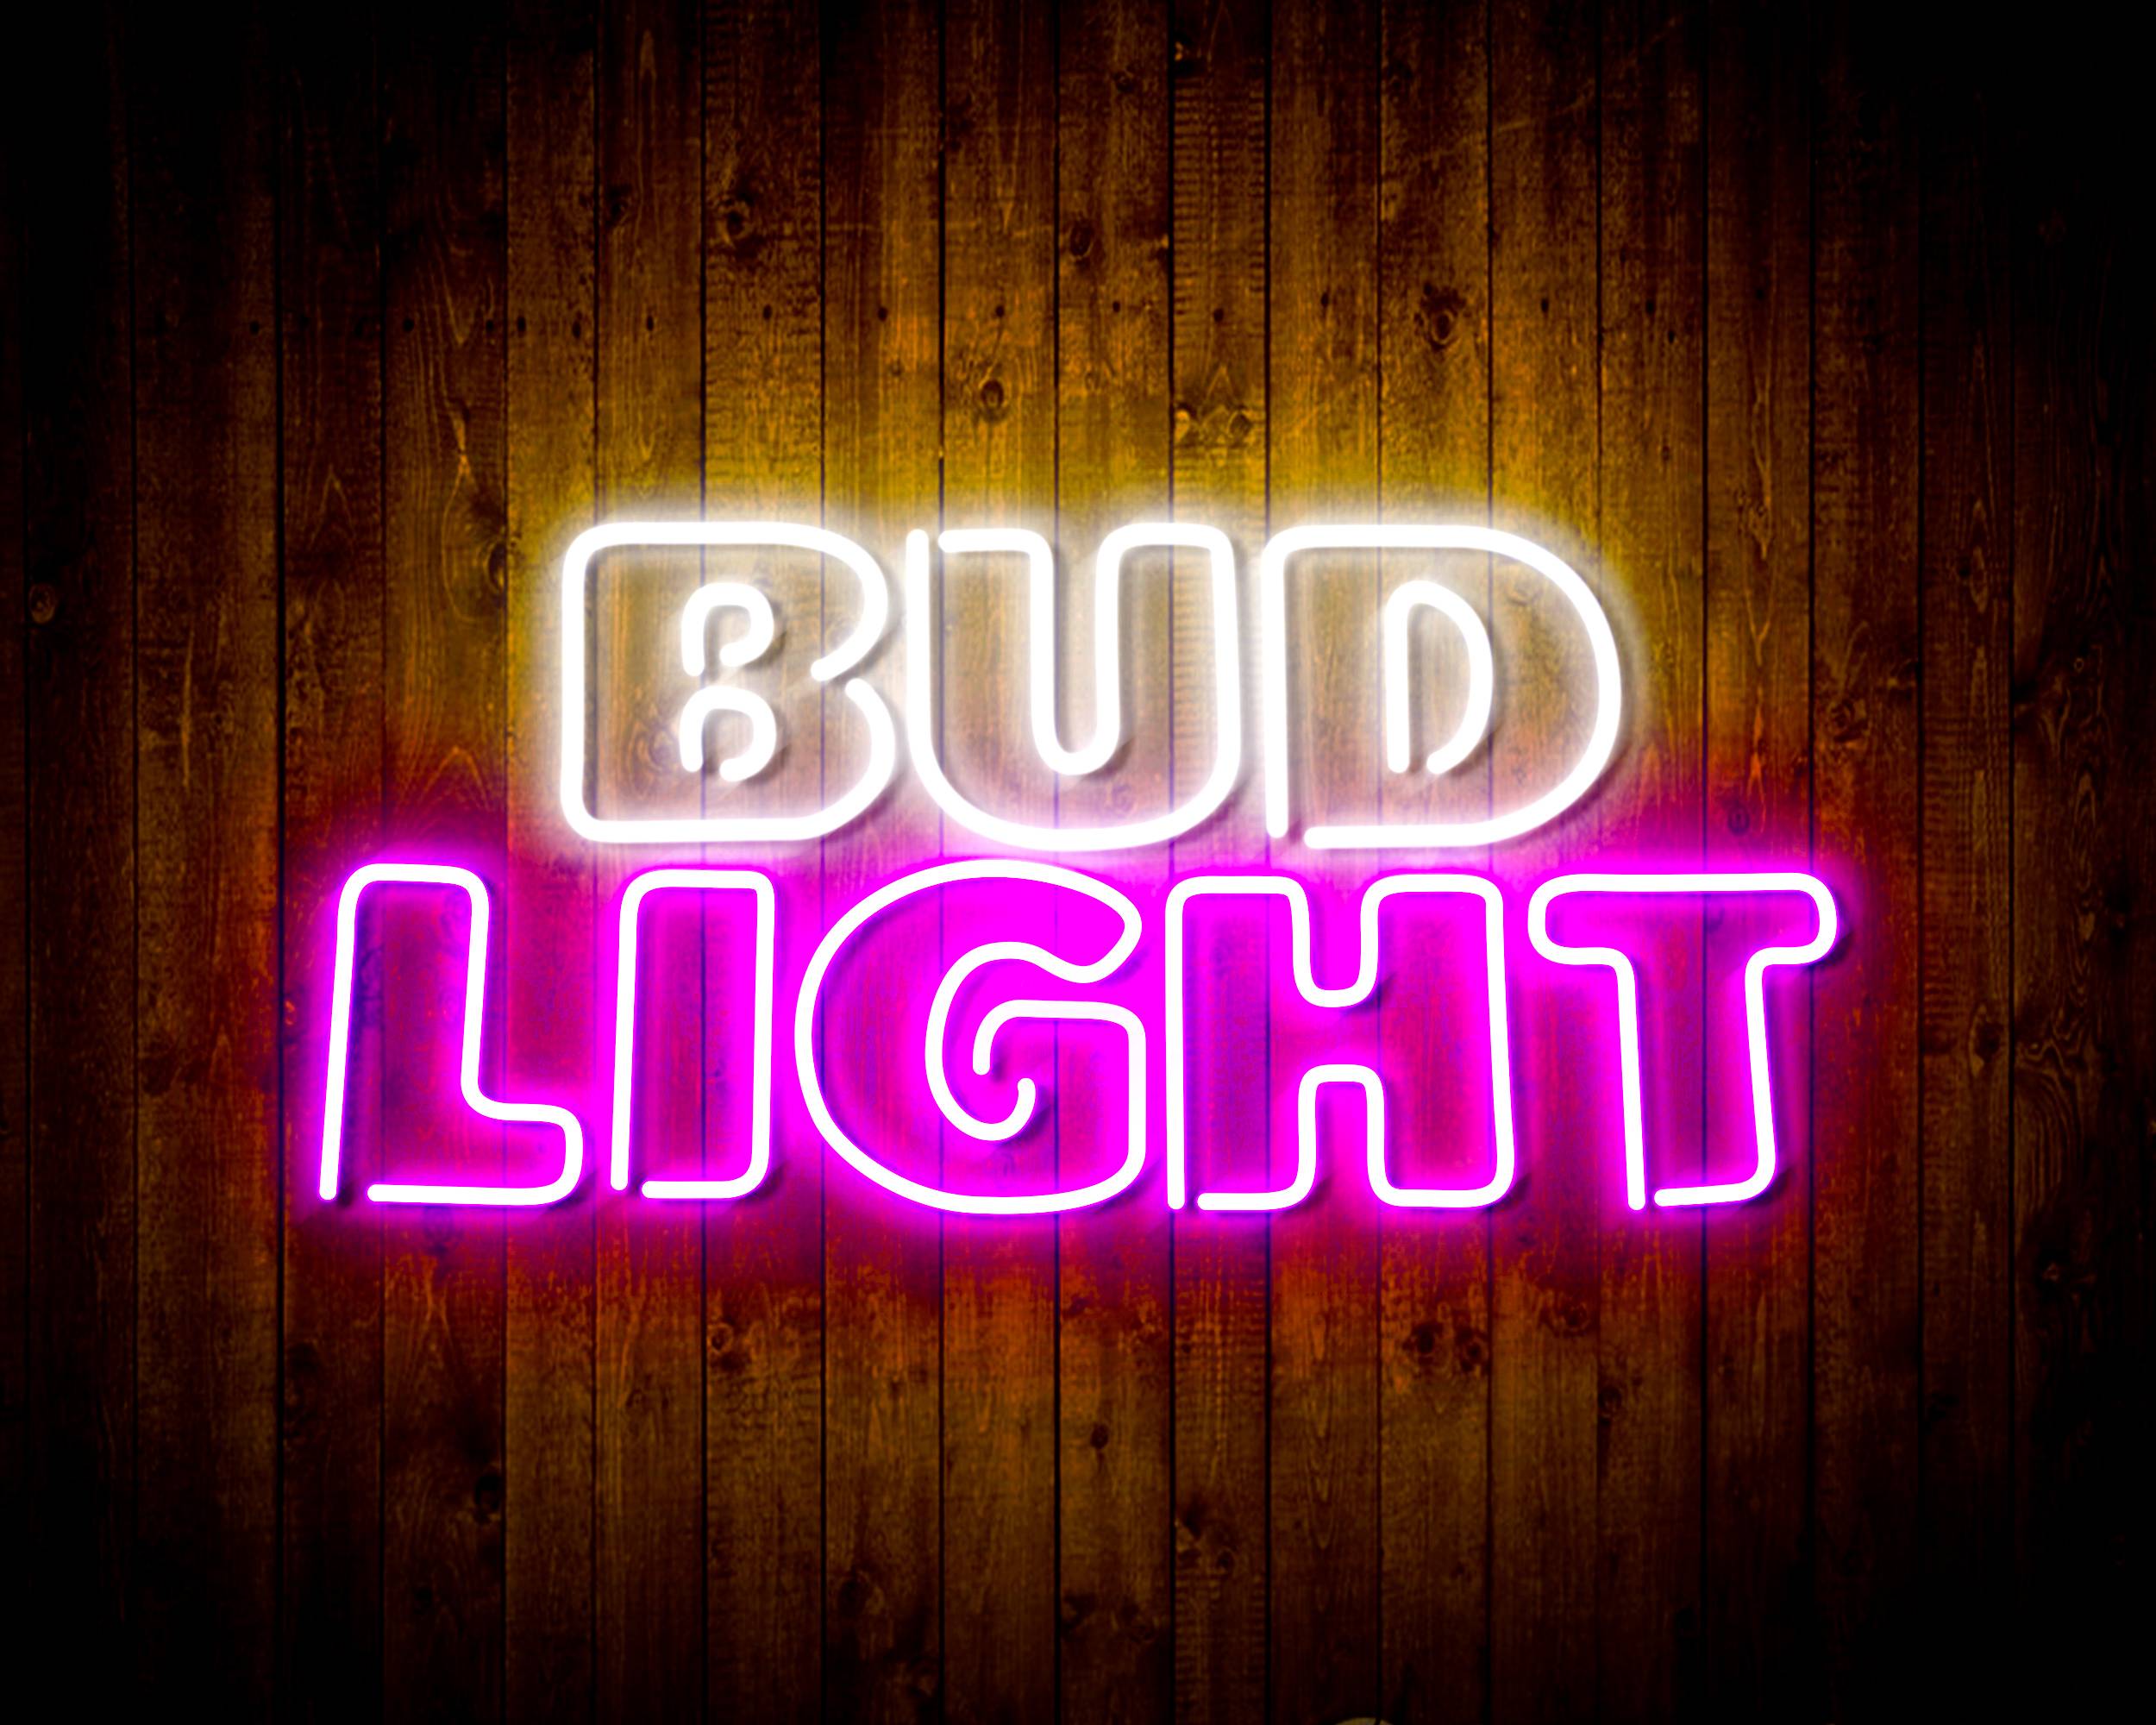 Bud Light Bar Handmade LED Neon Light Sign